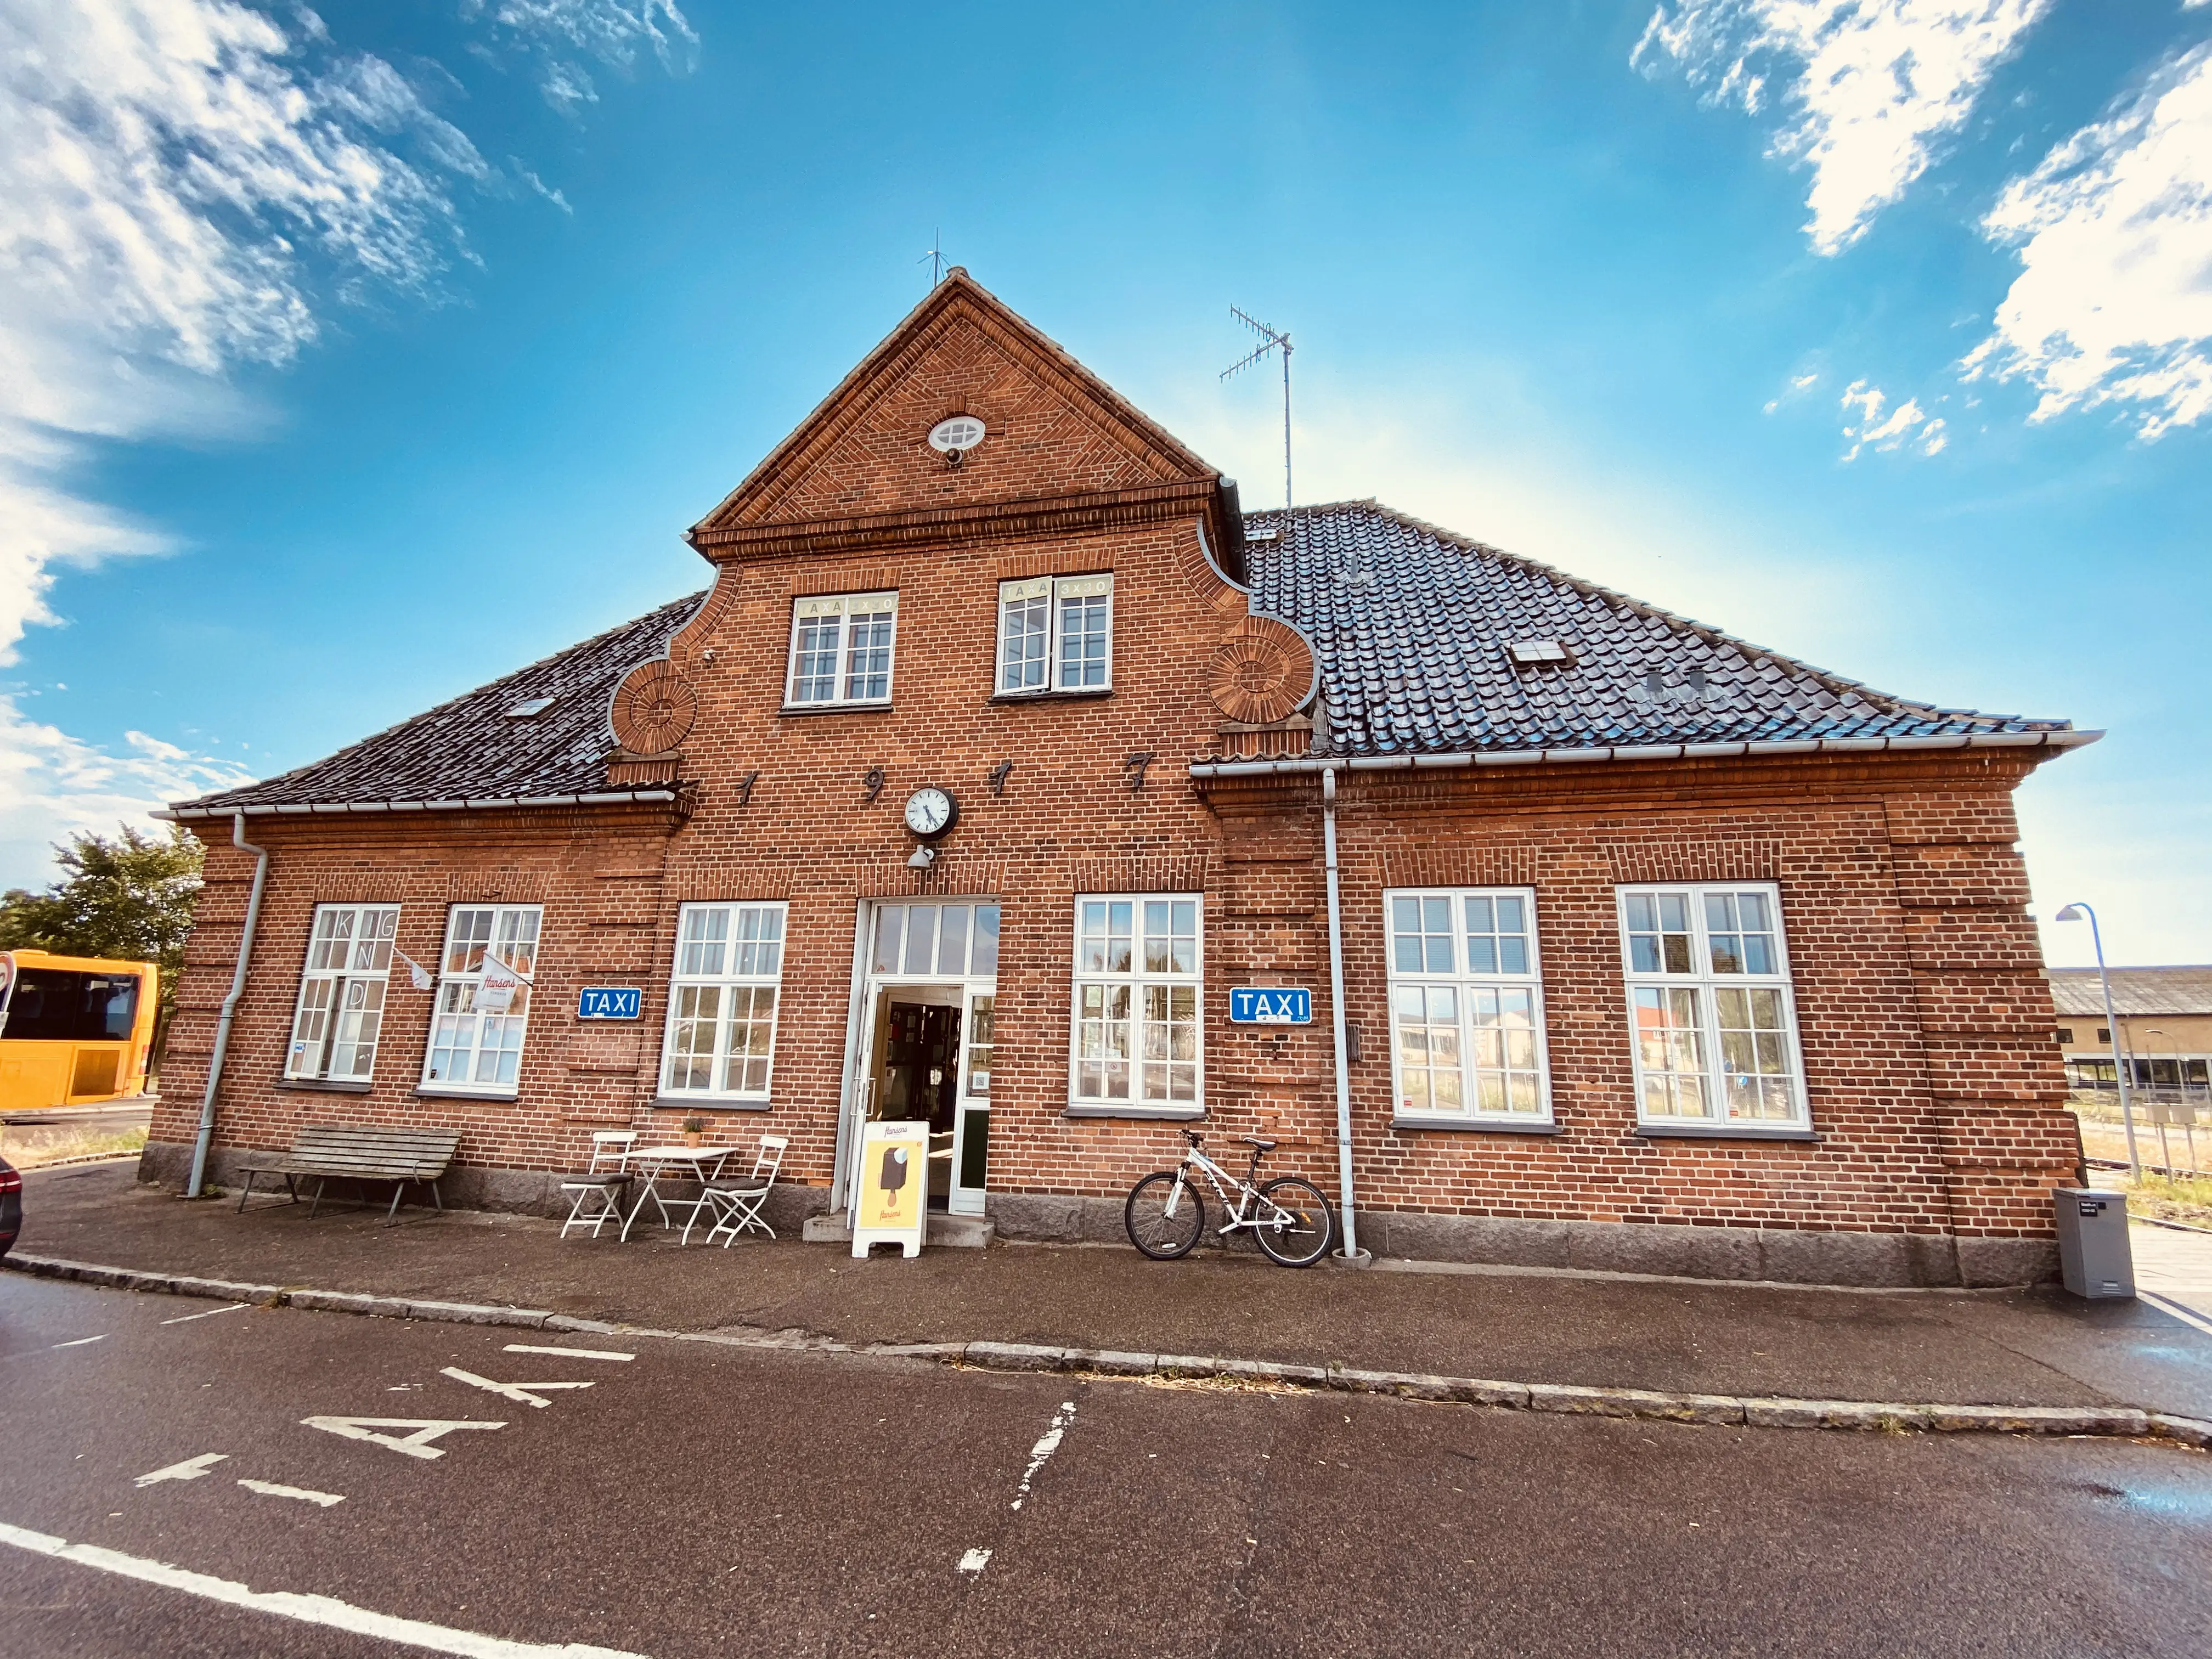 Billede af Gilleleje Station.